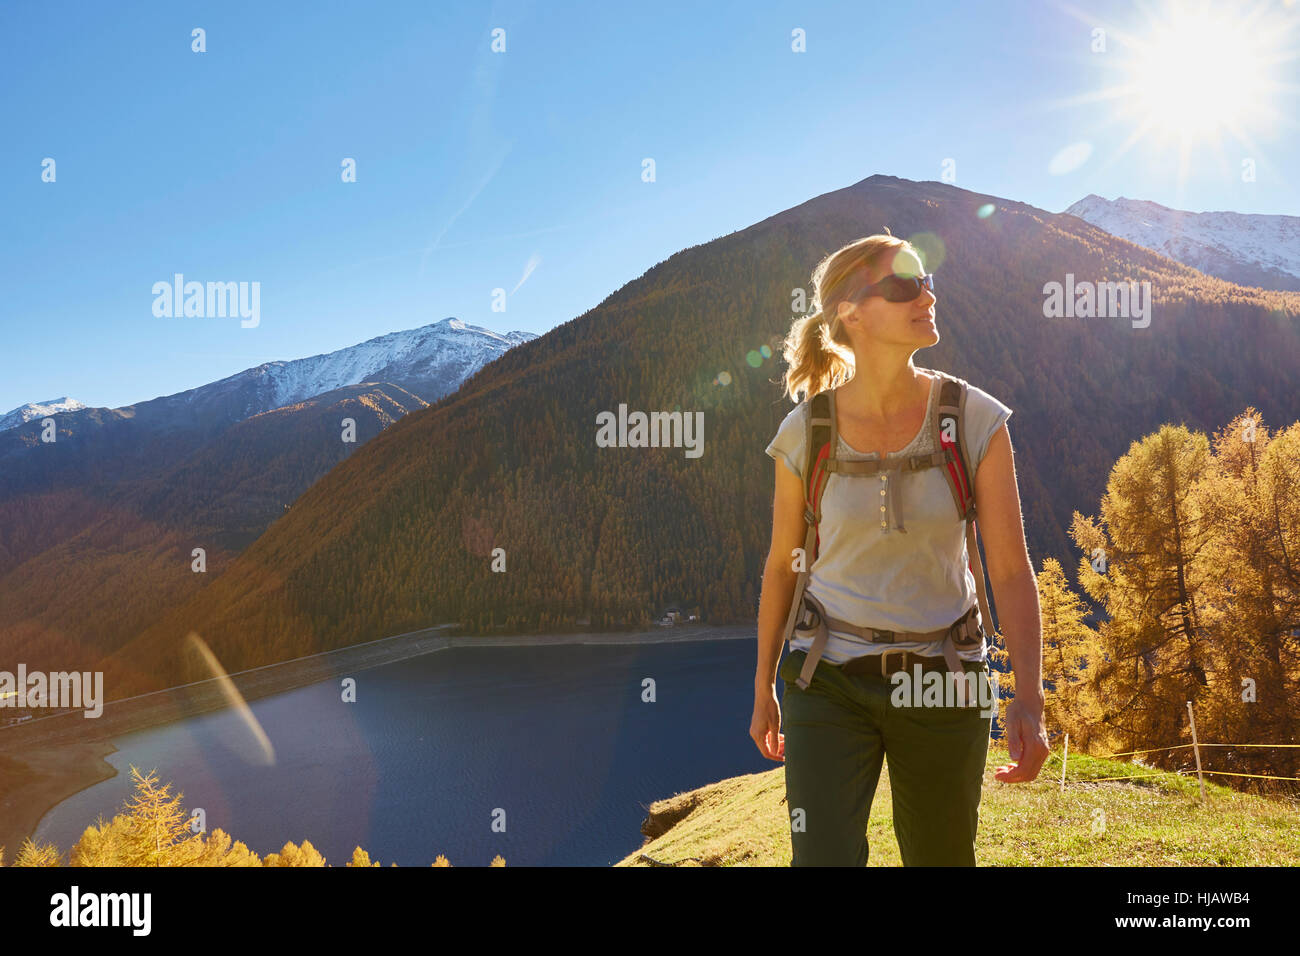 Woman Hiking, guardando a vista, Val Senales Alto Adige - Italia Foto Stock